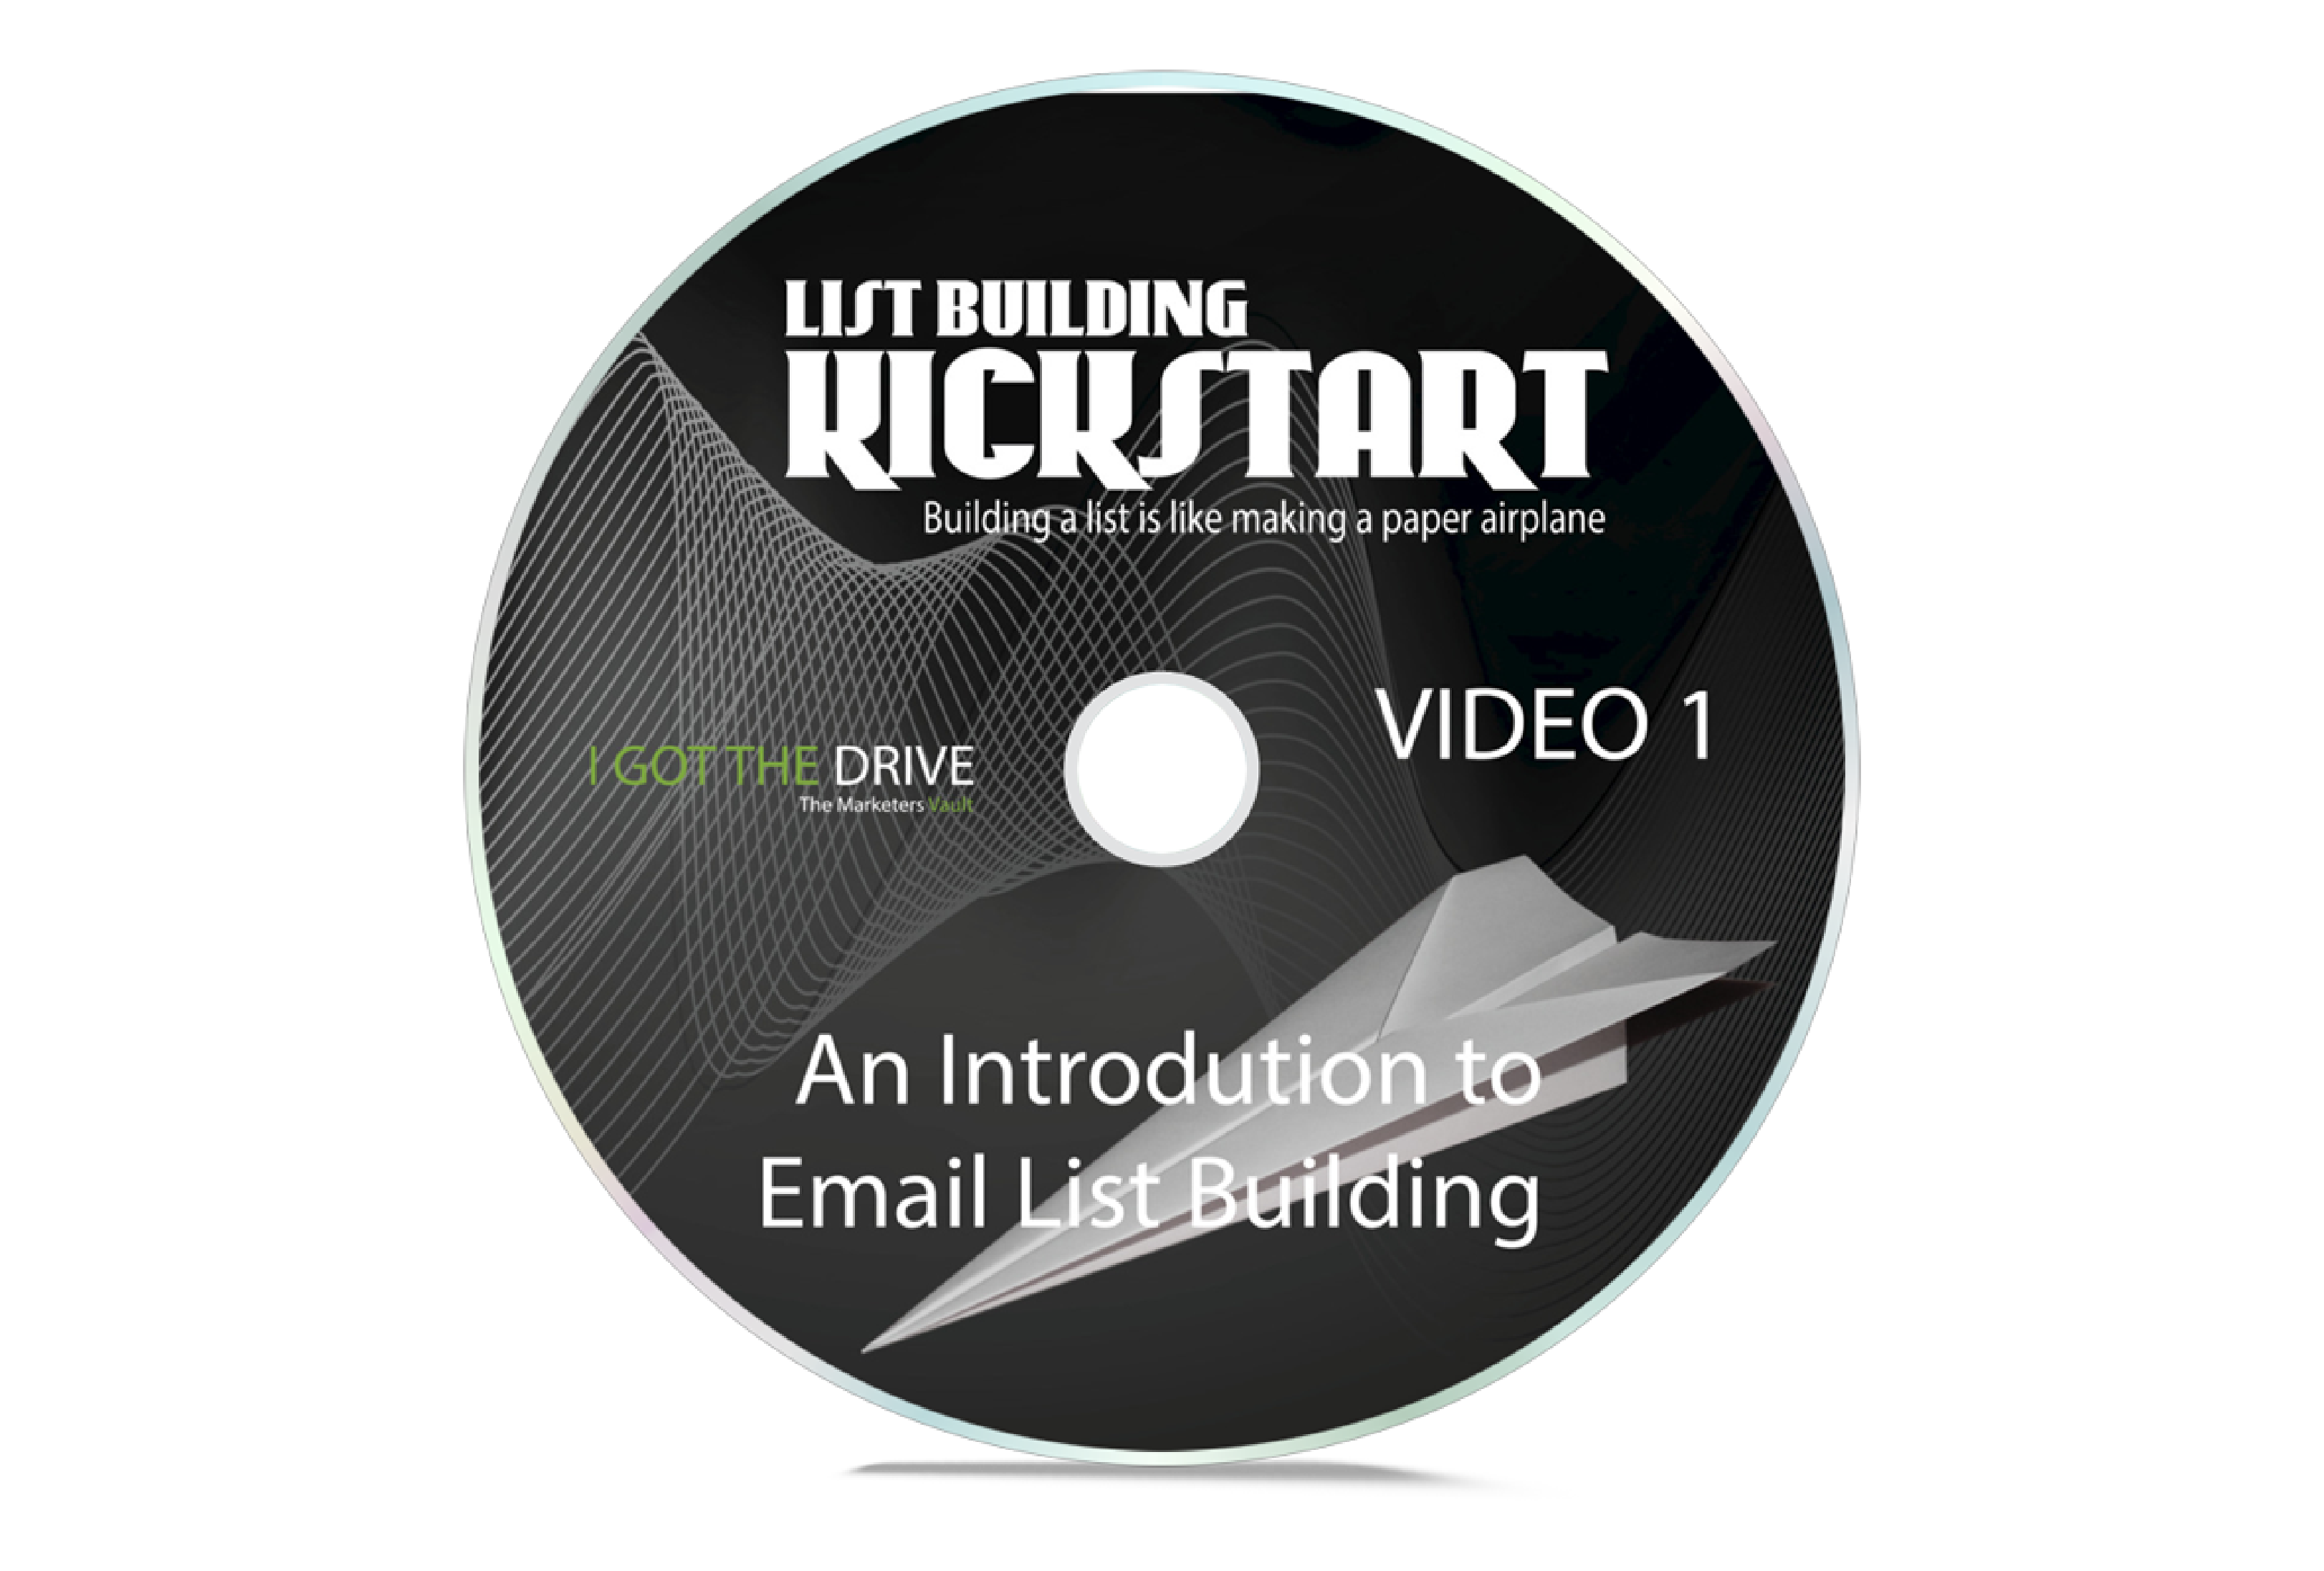 list building kickstart DVD 1